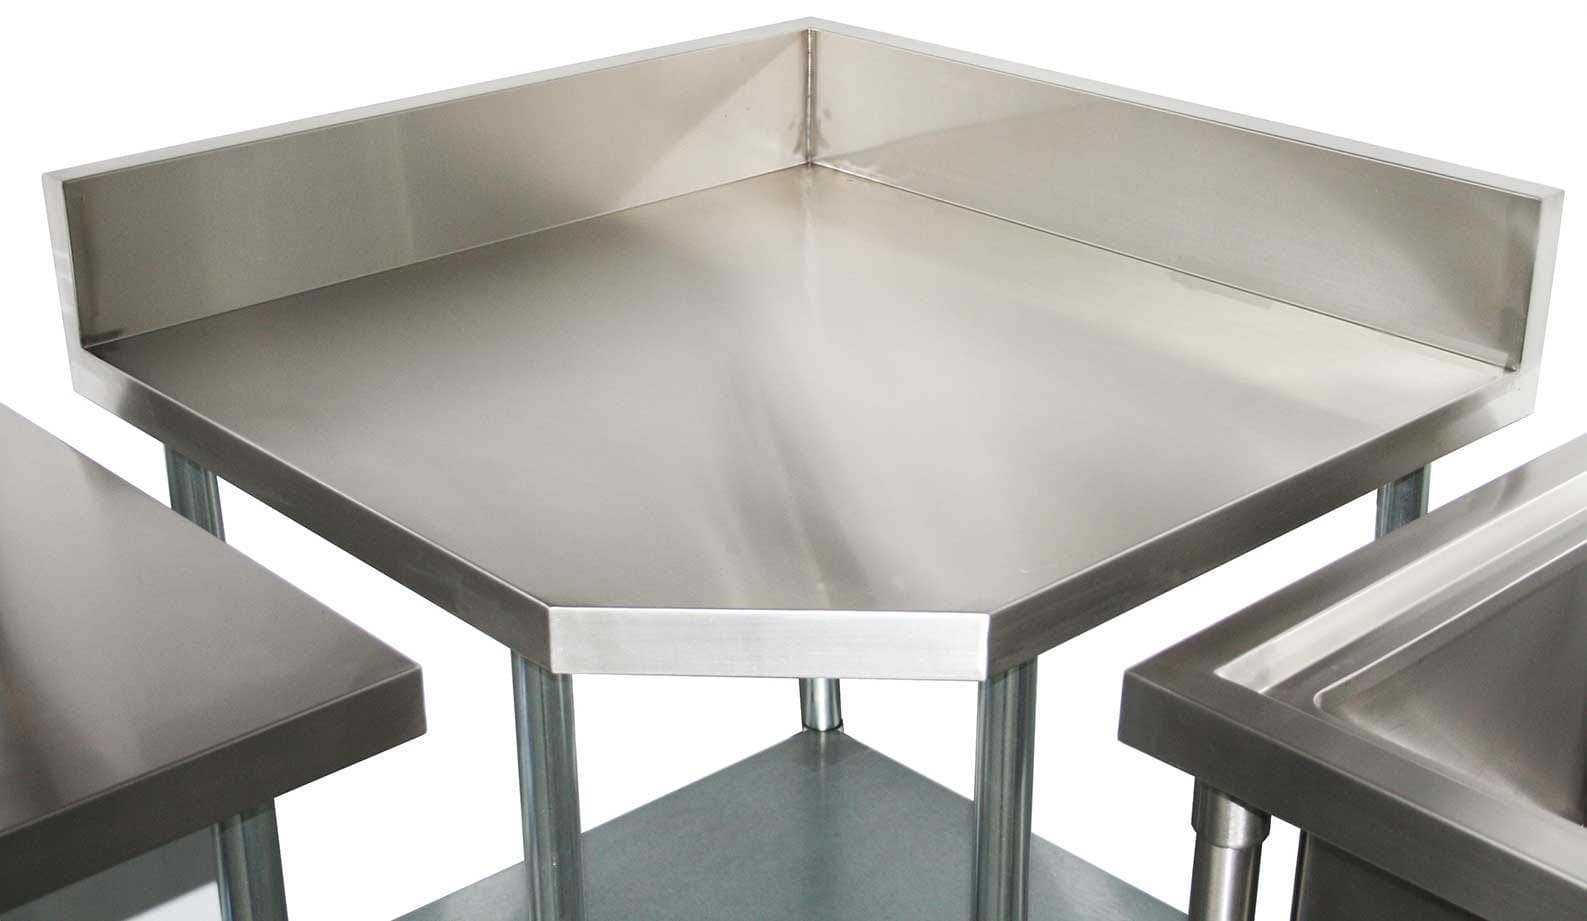 Commercial 304 Grade Stainless Steel Corner 900mm Splashback Bench, 900 x 900 x 900mm high